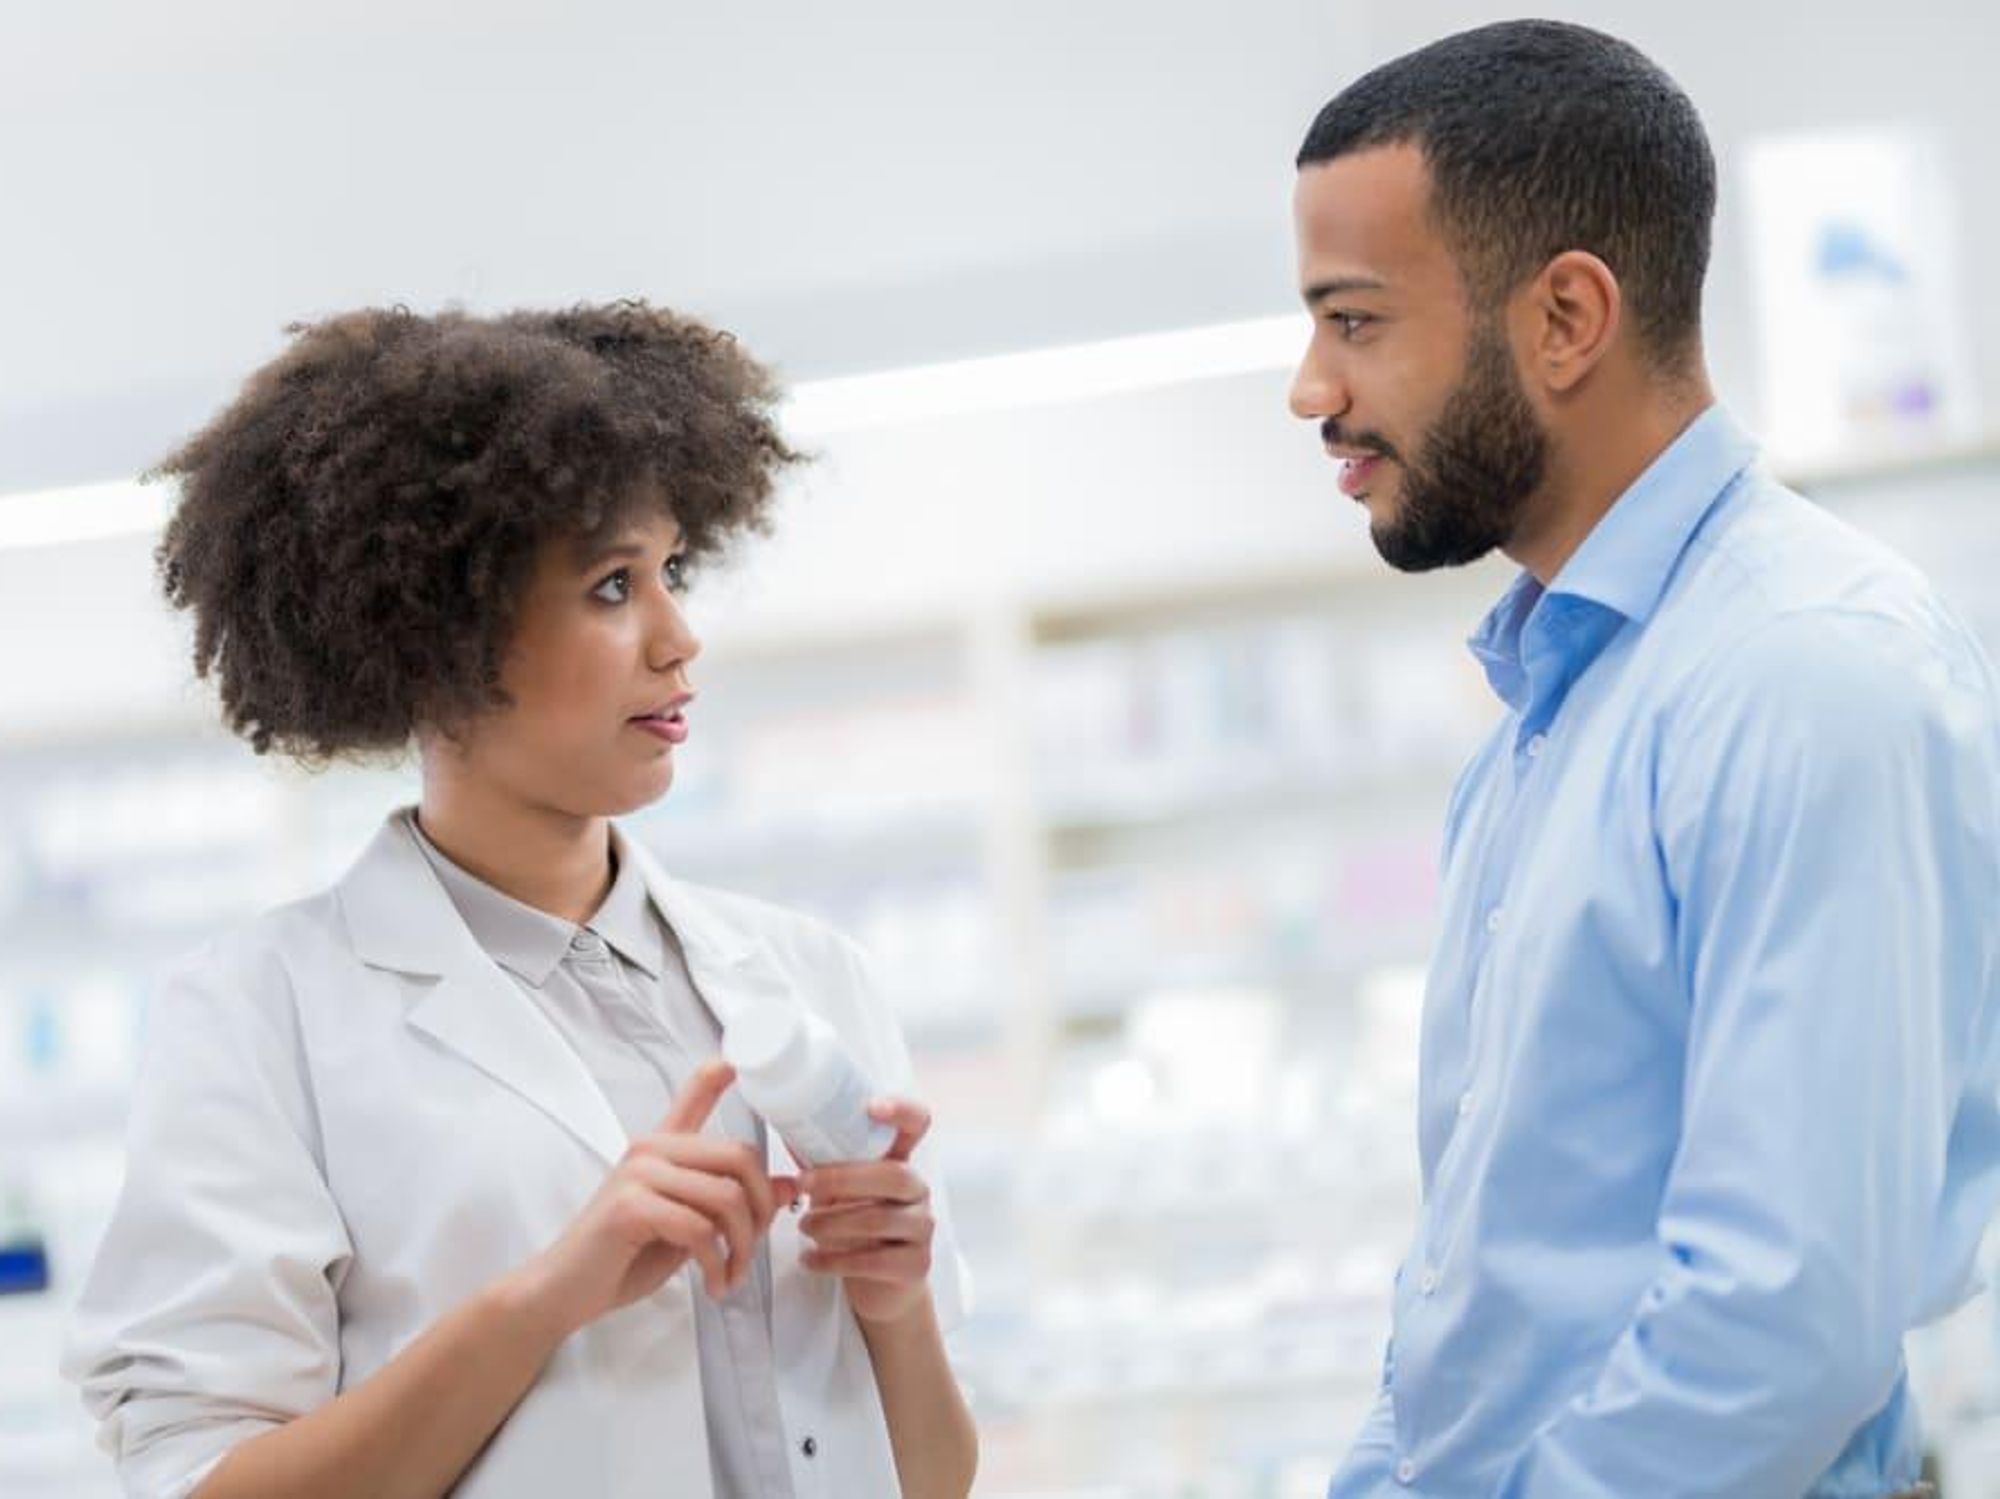 Pharmacist talking to man